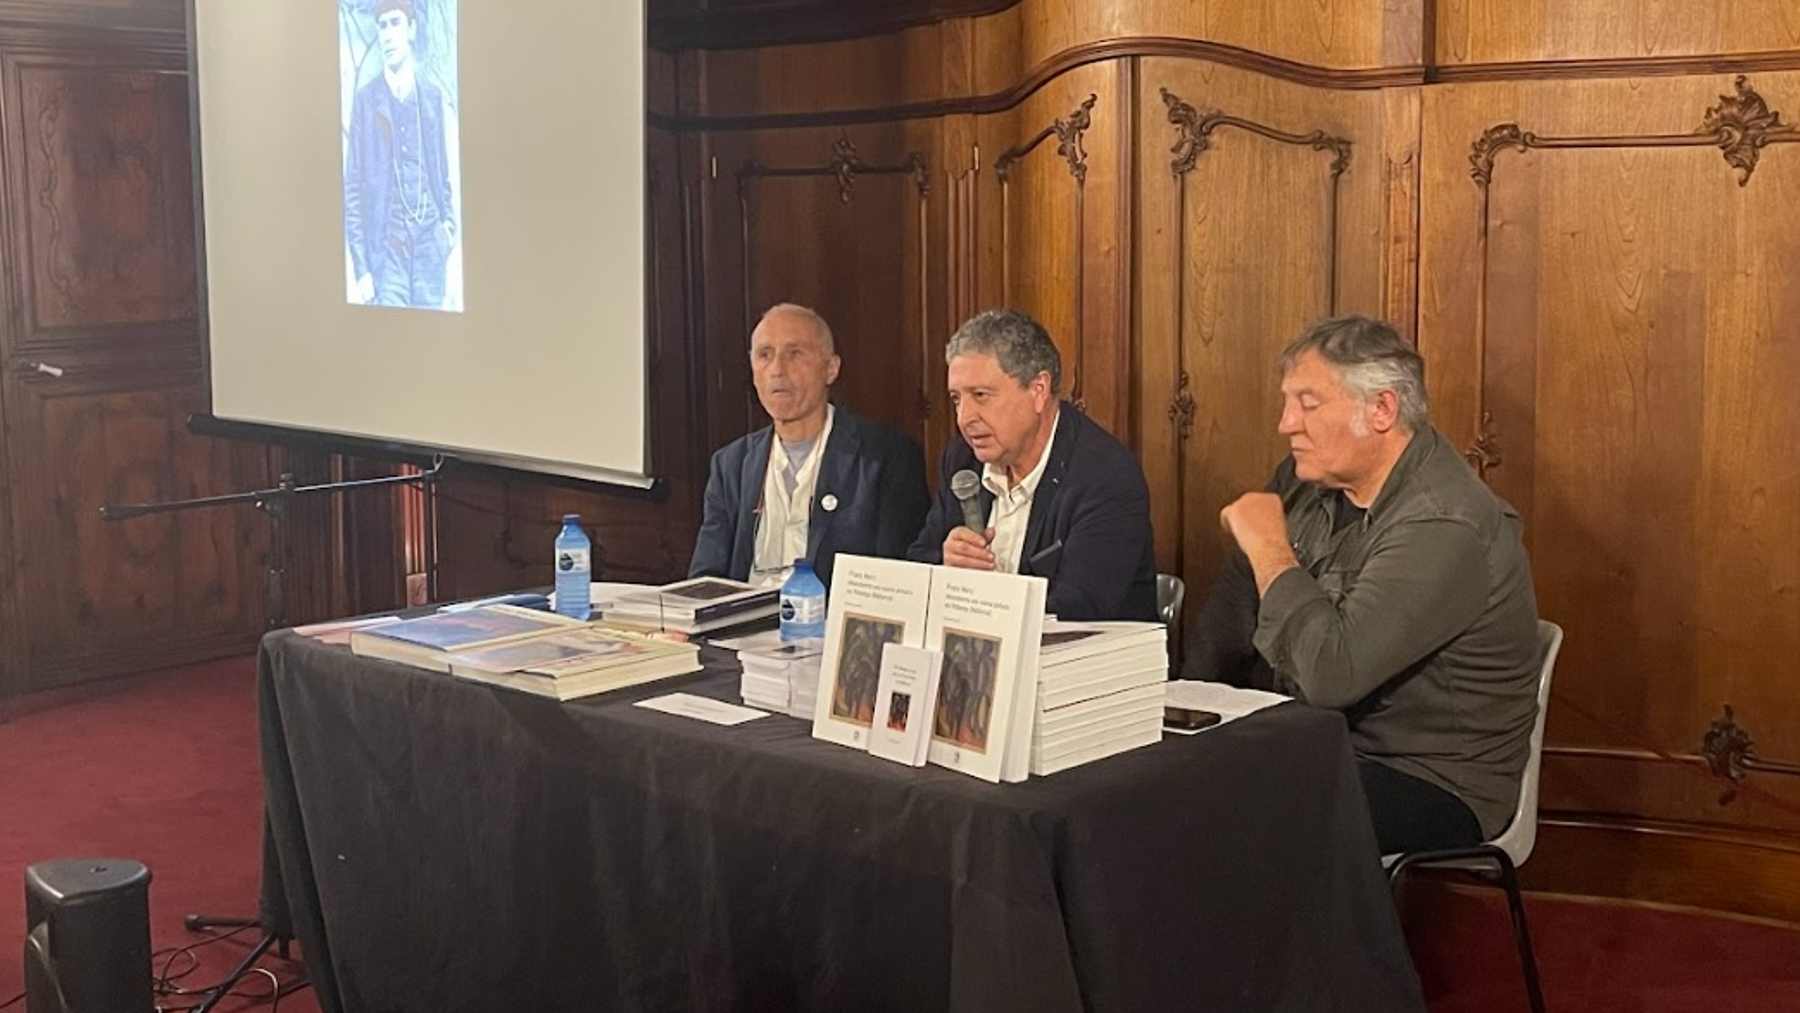 Carlos Jover y Tomeu Lamo, en la presentación de sus libros sobre la obra de Franz Marc descubierta en Pollença.